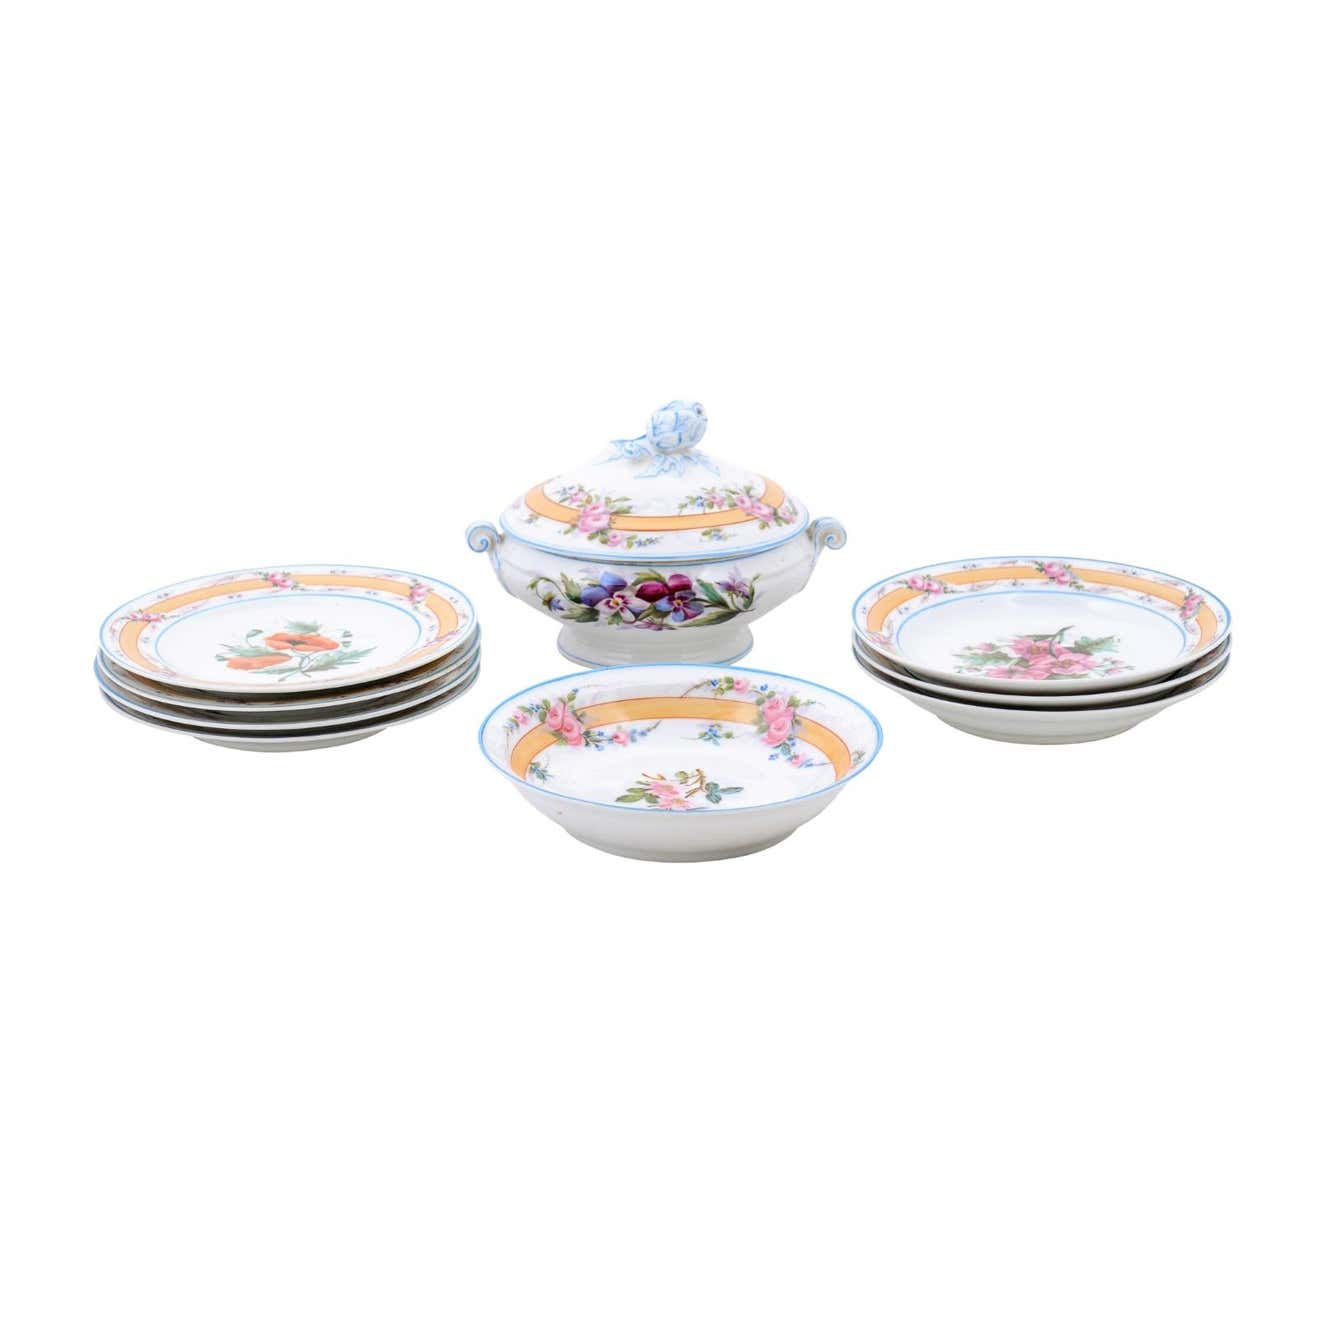 Porcelaine de Paris 19th Century Floral Dish Set with Casserole and Plates